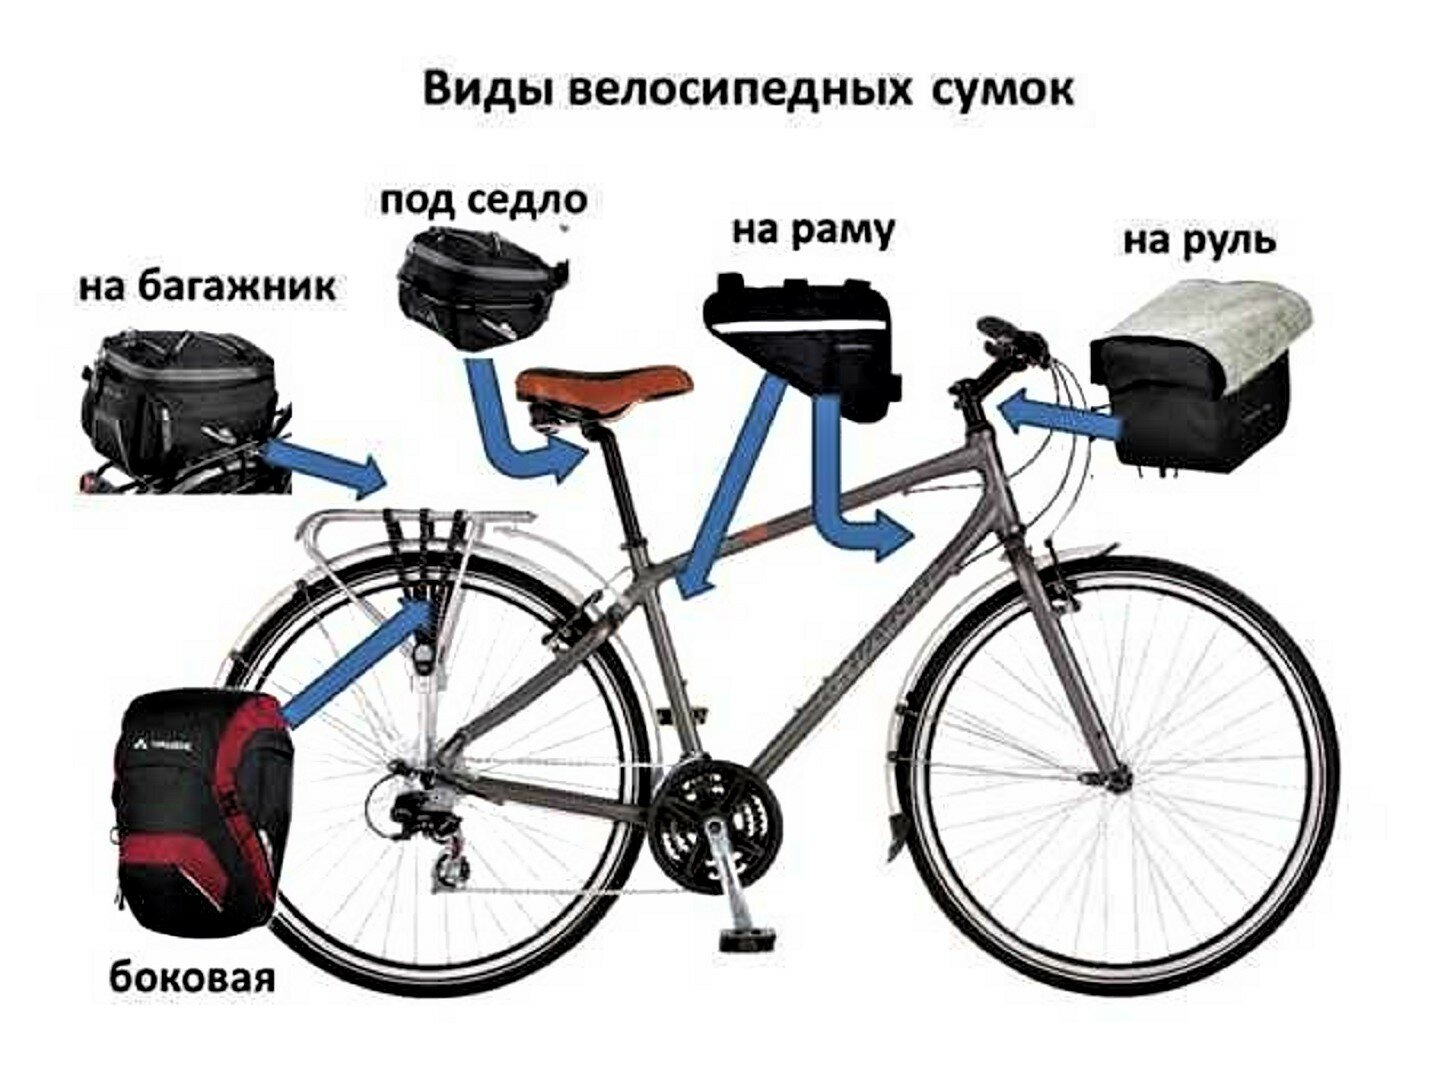 Виды велосипелных сумок